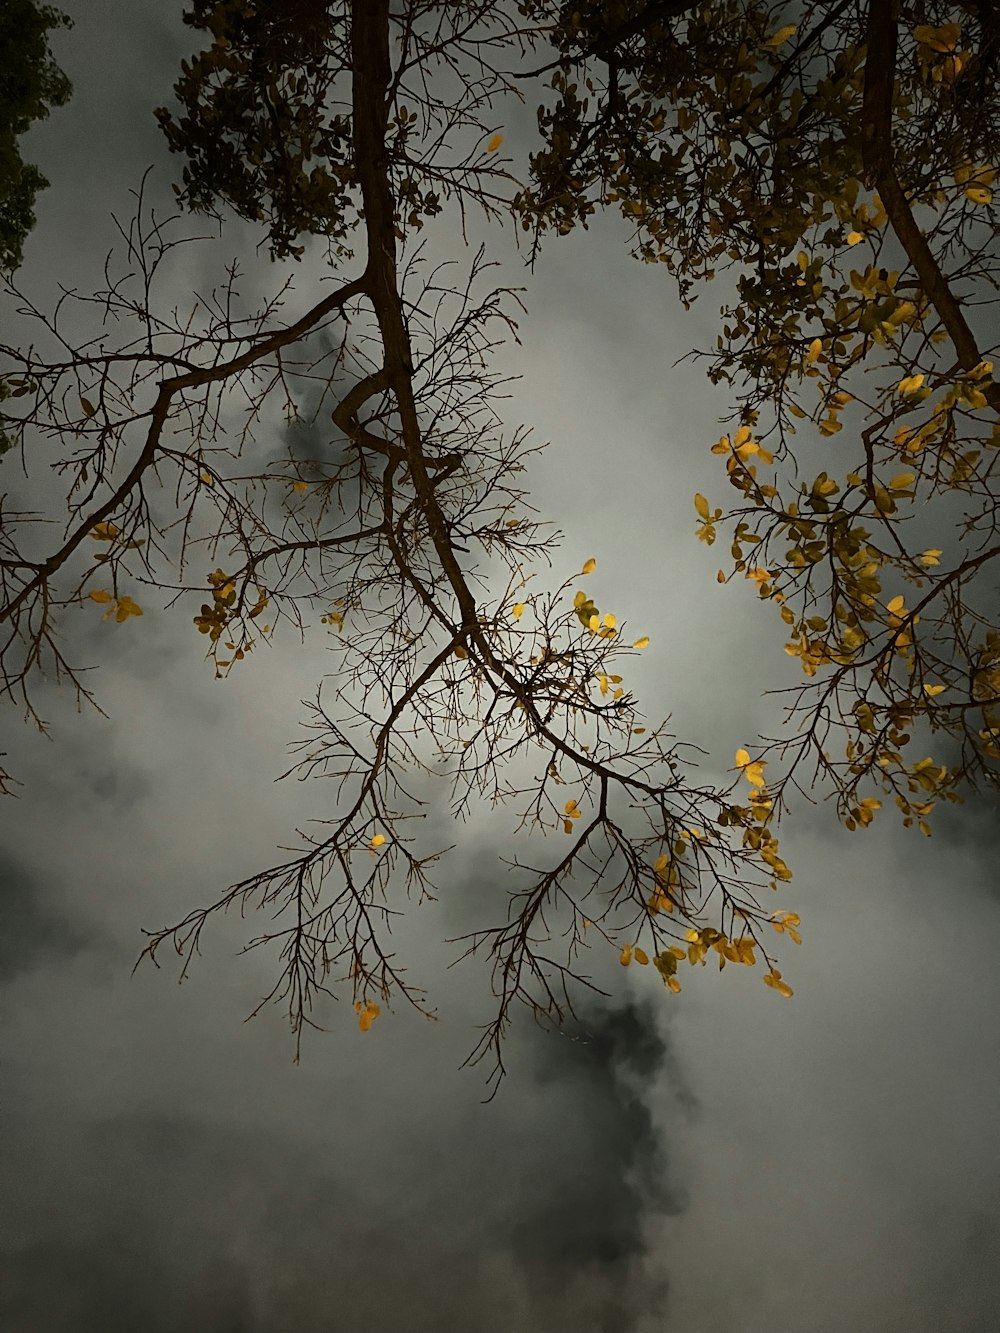 흐린 하늘을 배경으로 노란 잎사귀를 가진 나무의 가지들